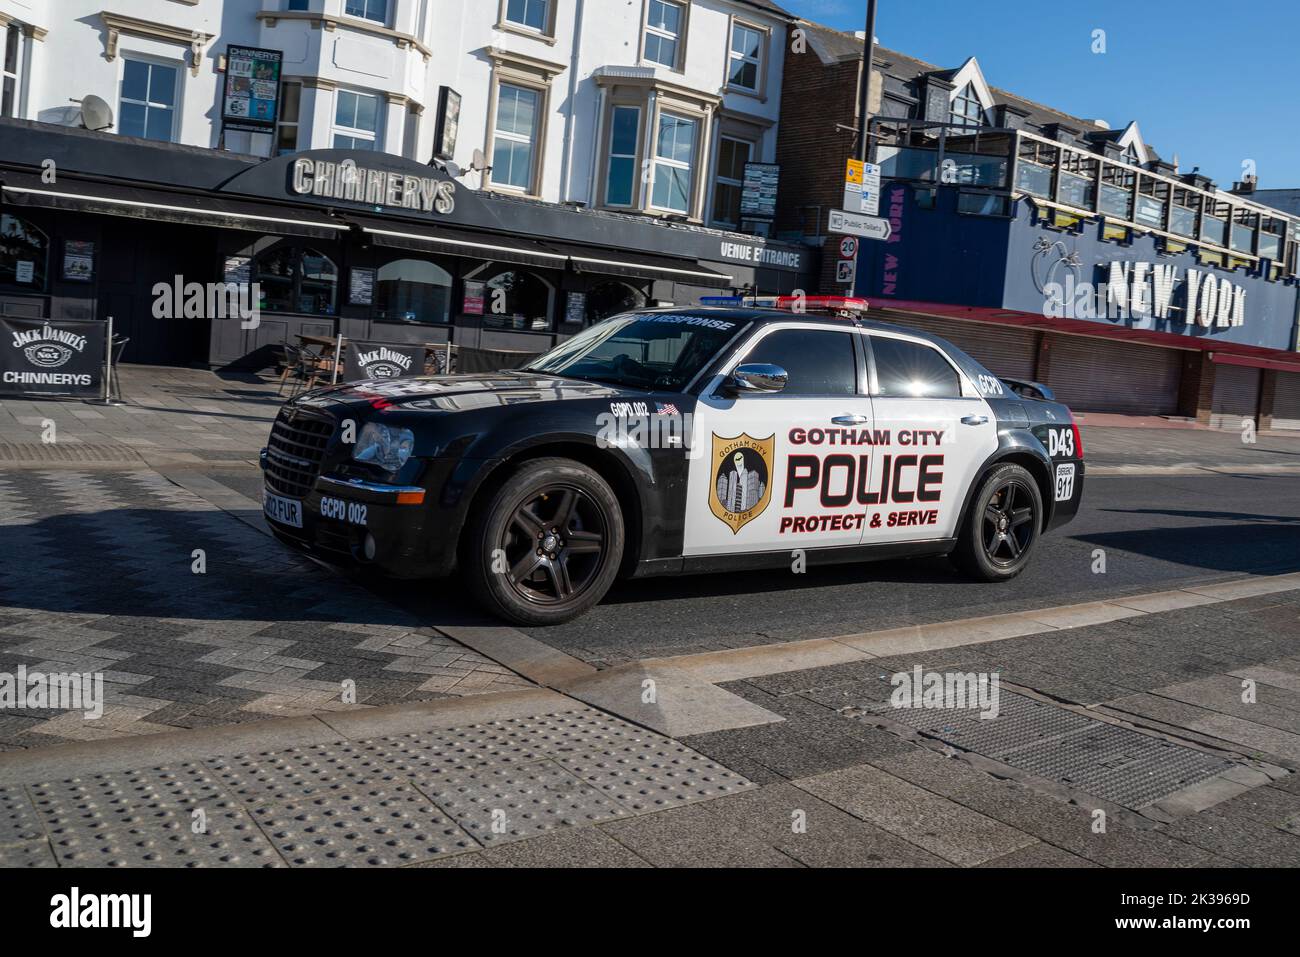 La voiture de police de Gotham City a marqué Chrysler 300 lors de la Marine Parade à Southend on Sea, Essex, Royaume-Uni. Texte Protect & serve. En passant par la salle de jeux de New York Banque D'Images